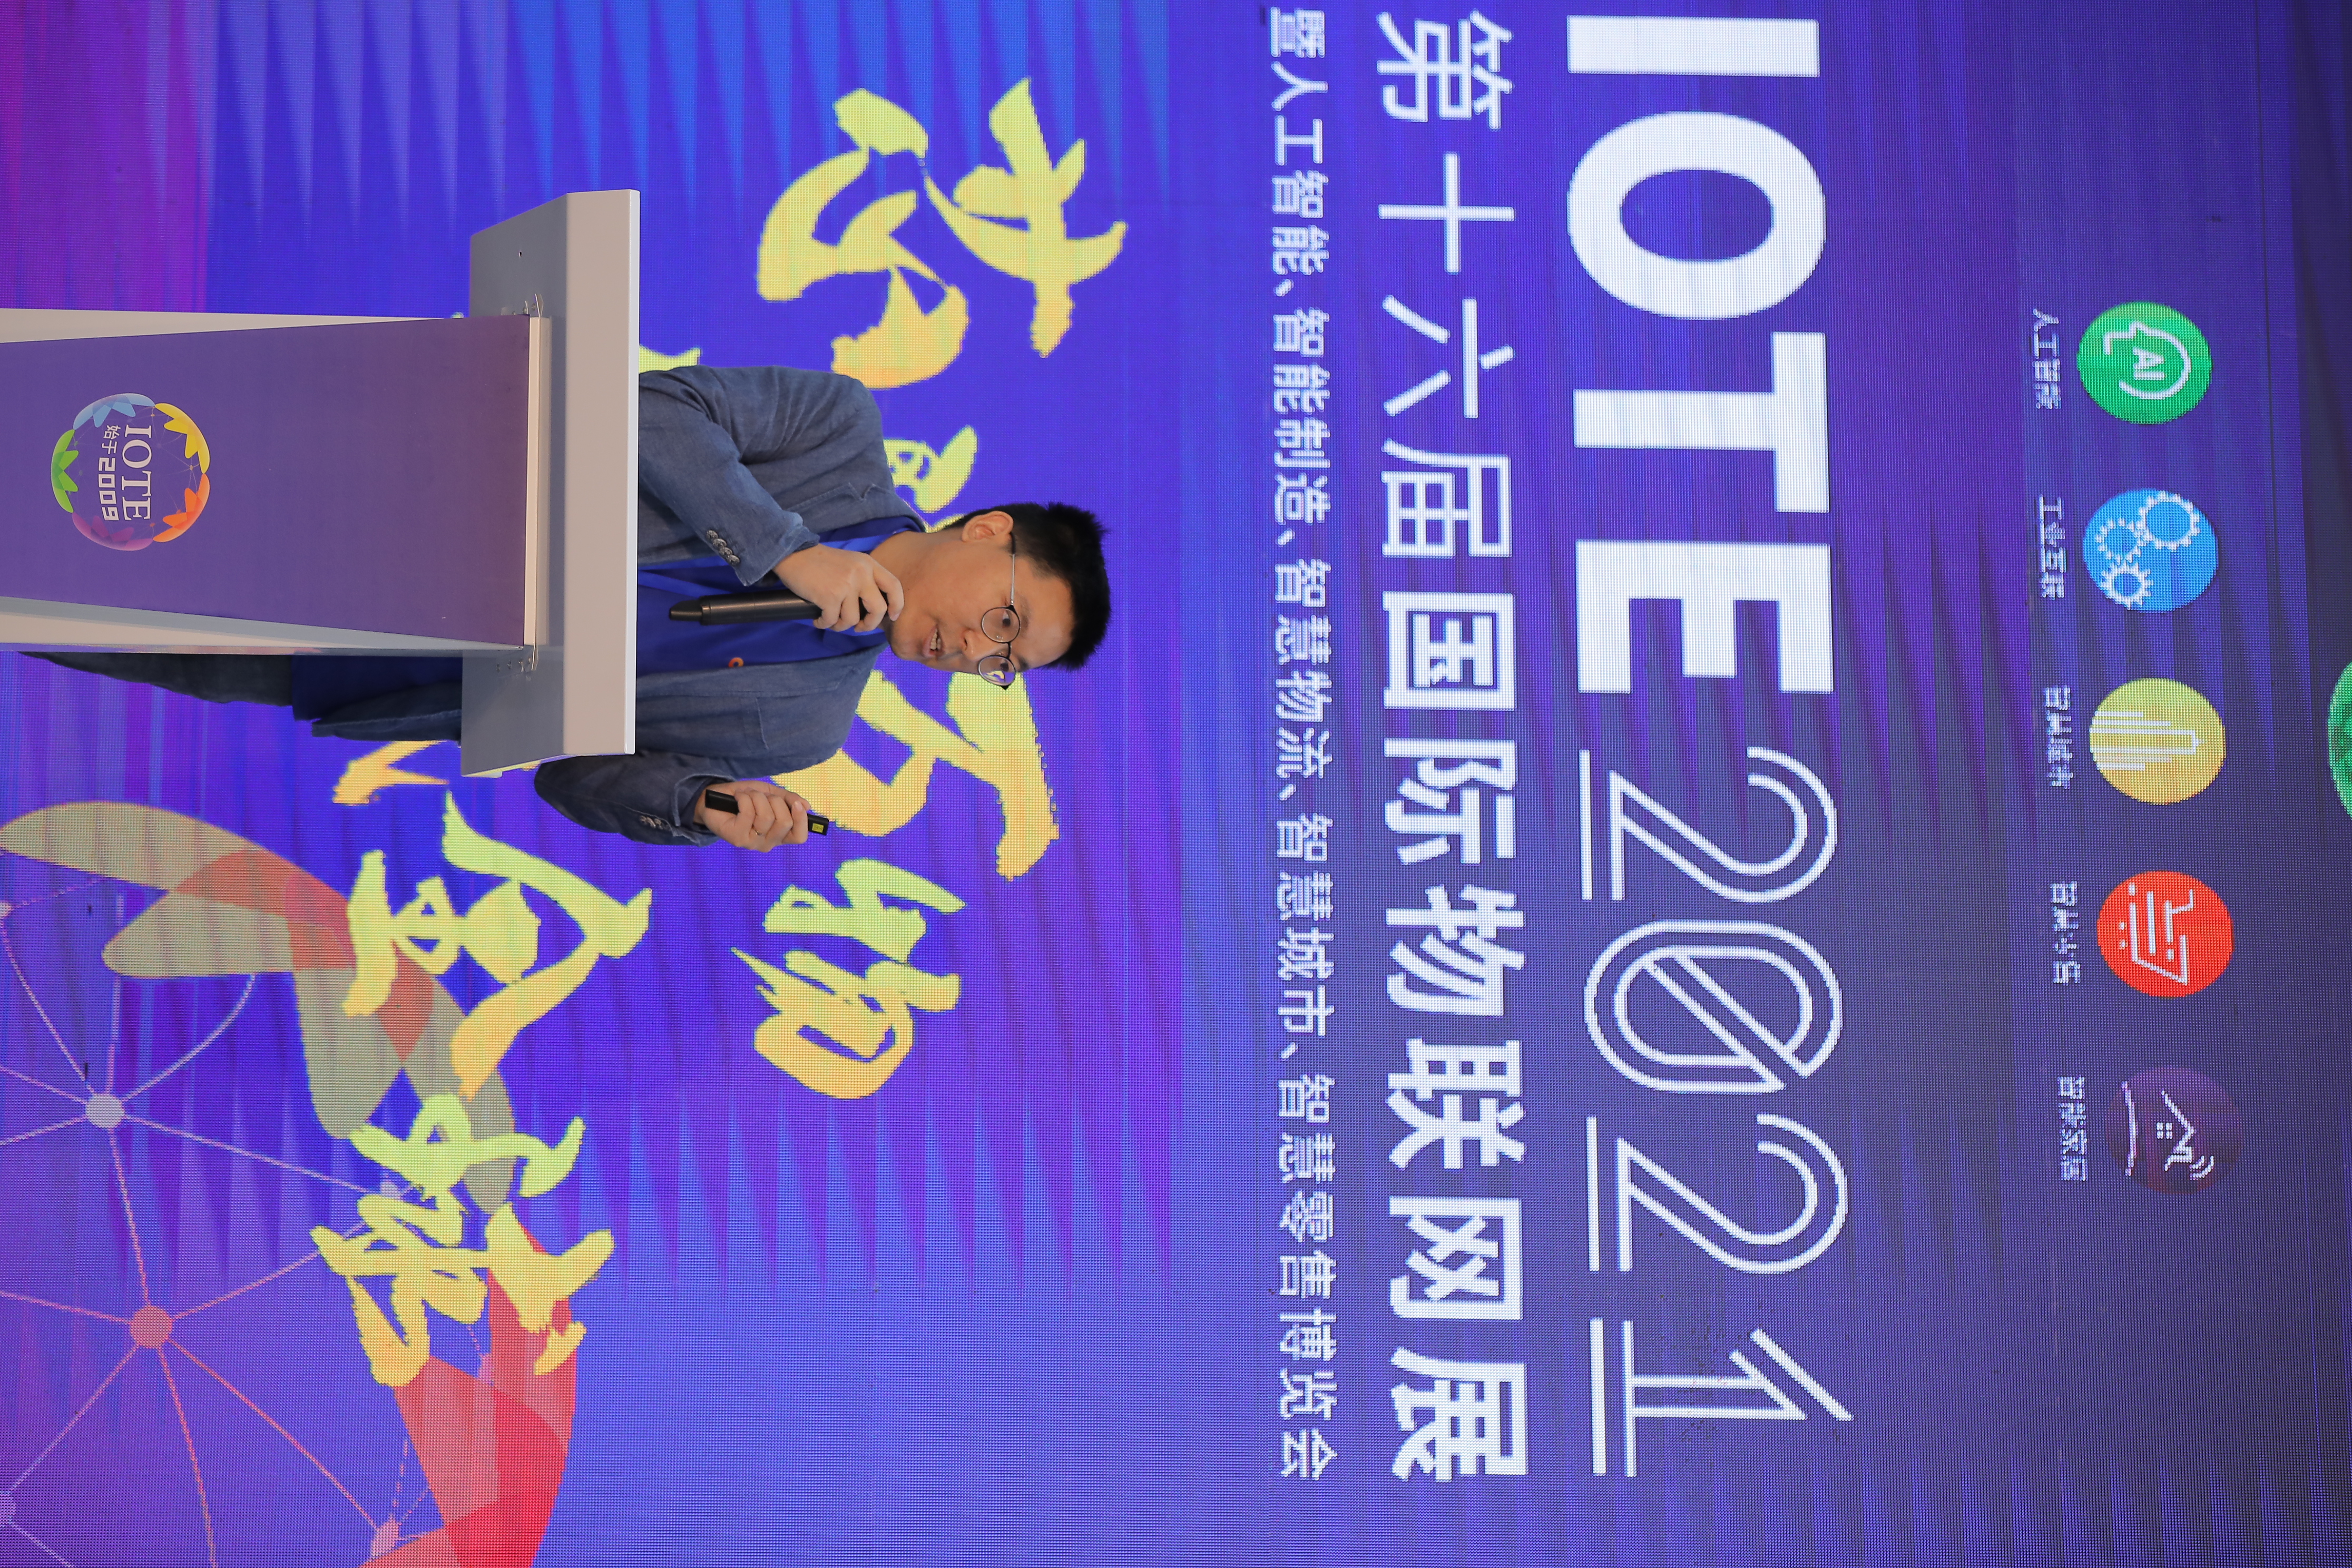 【论坛】IOTE 2021 深圳智慧园区&社区创新应用高峰论坛 